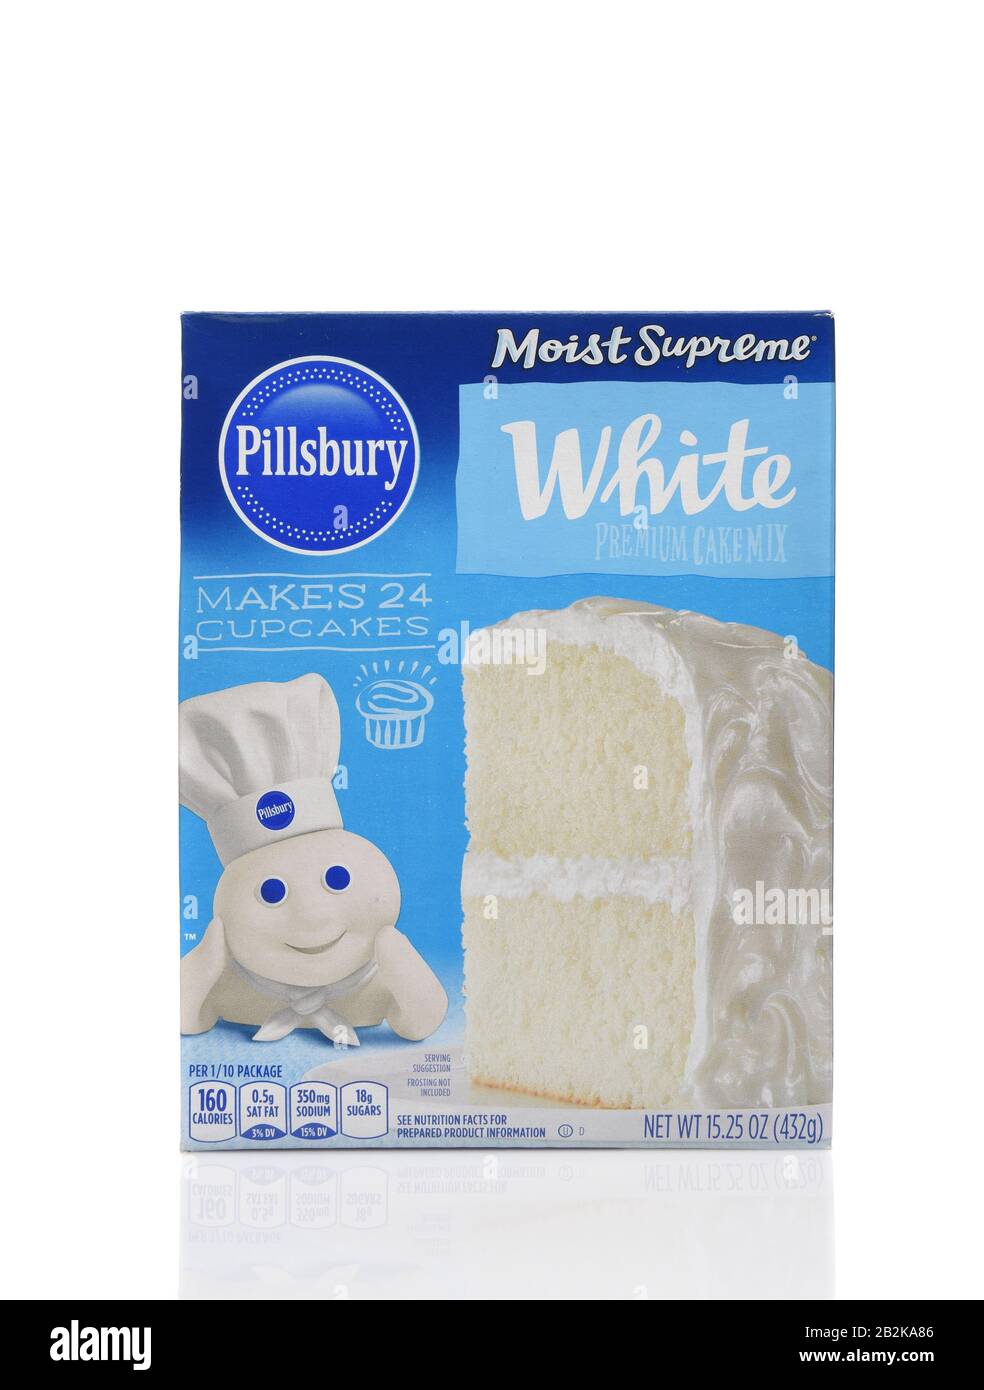 Irvine, KALIFORNIEN - 20. AUGUST 2019: Eine Schachtel Pillsbury Most Supreme Classic White Cake Mix. Stockfoto